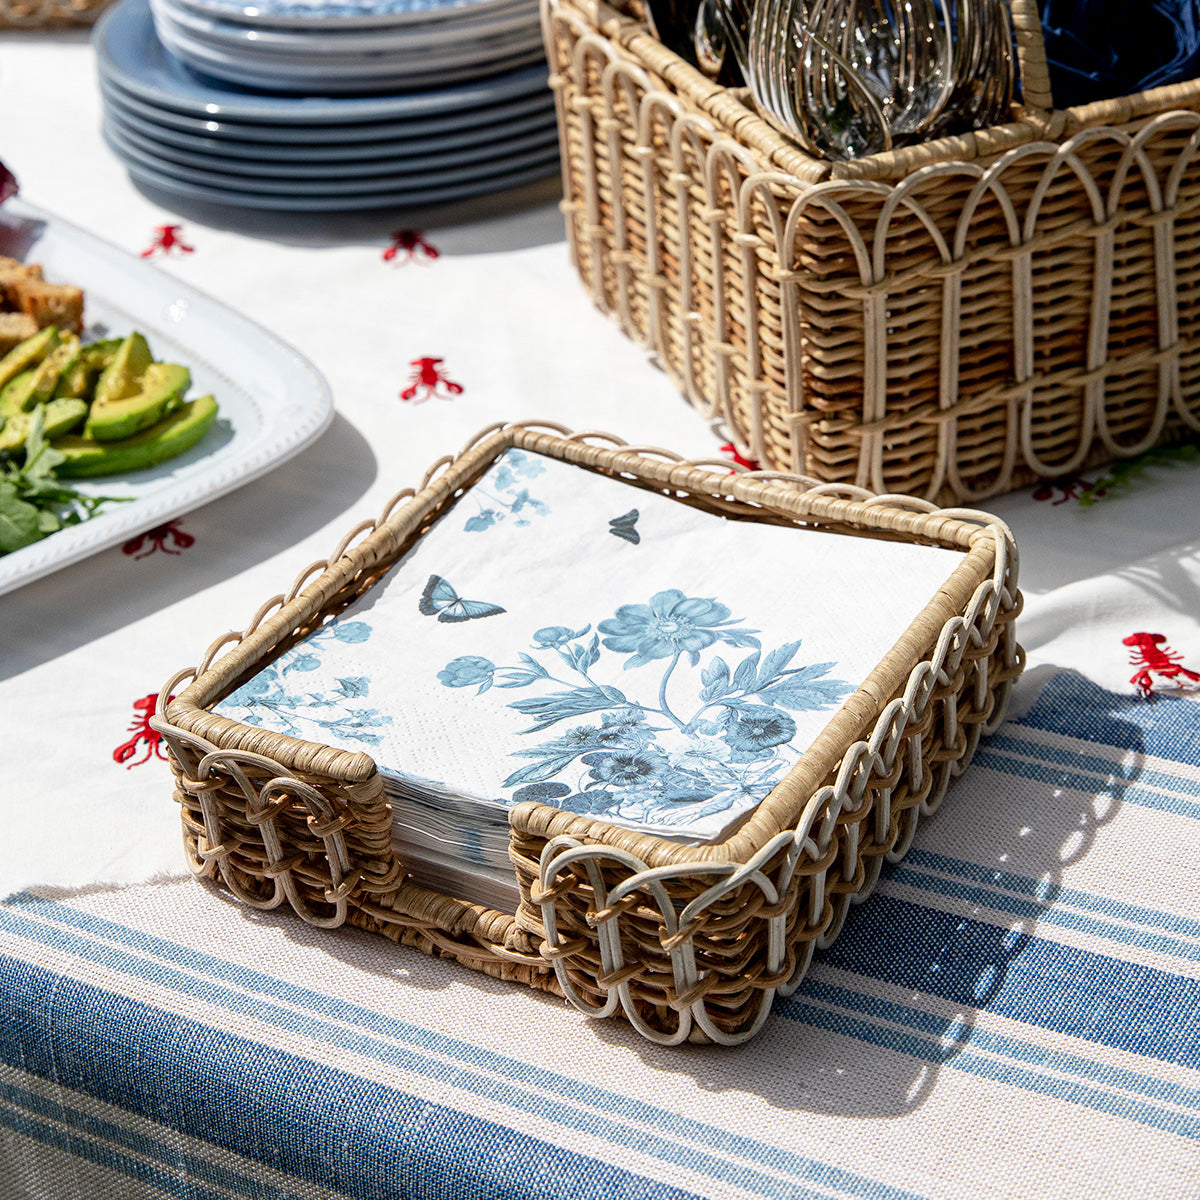 Juliska Provence Rattan Luncheon Napkin Holder - Whitewash